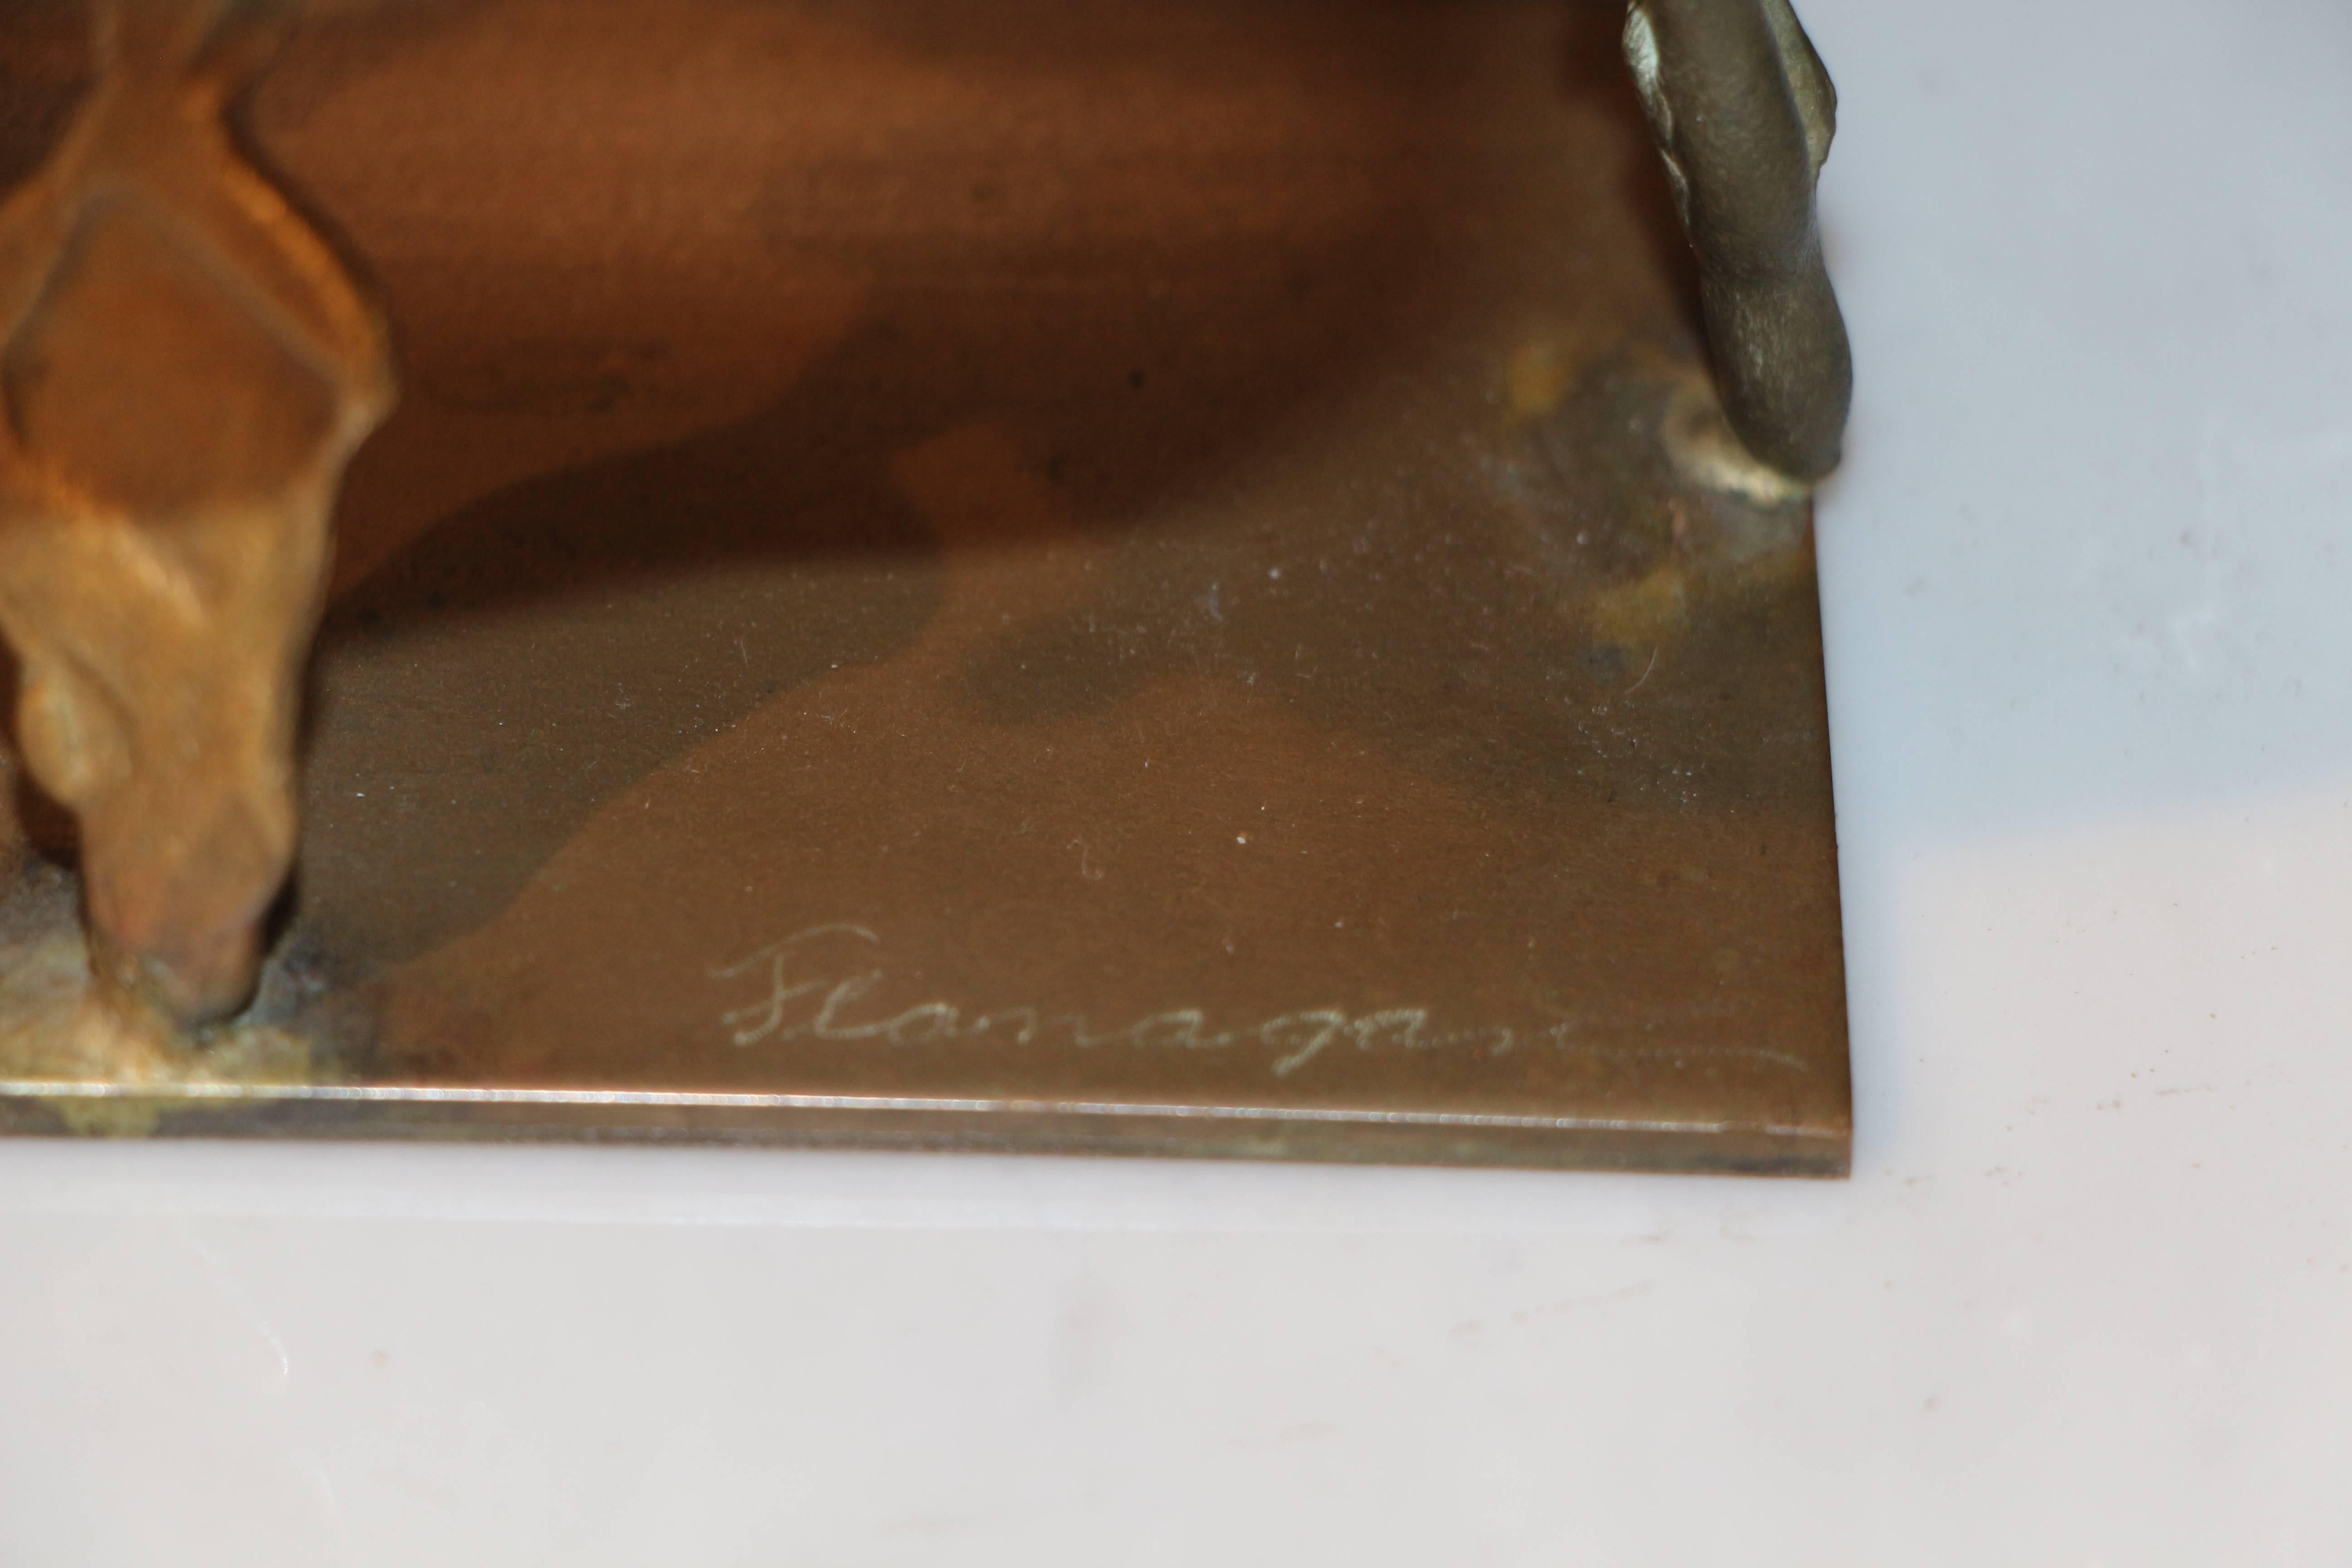 Un merveilleux bronze fantaisiste de ce qui ressemble à un lièvre signé Flanagan. Nous pensons qu'il s'agit d'une œuvre du célèbre artiste gallois Barry Flanagan. Il provenait d'une importante propriété de l'État de New York.